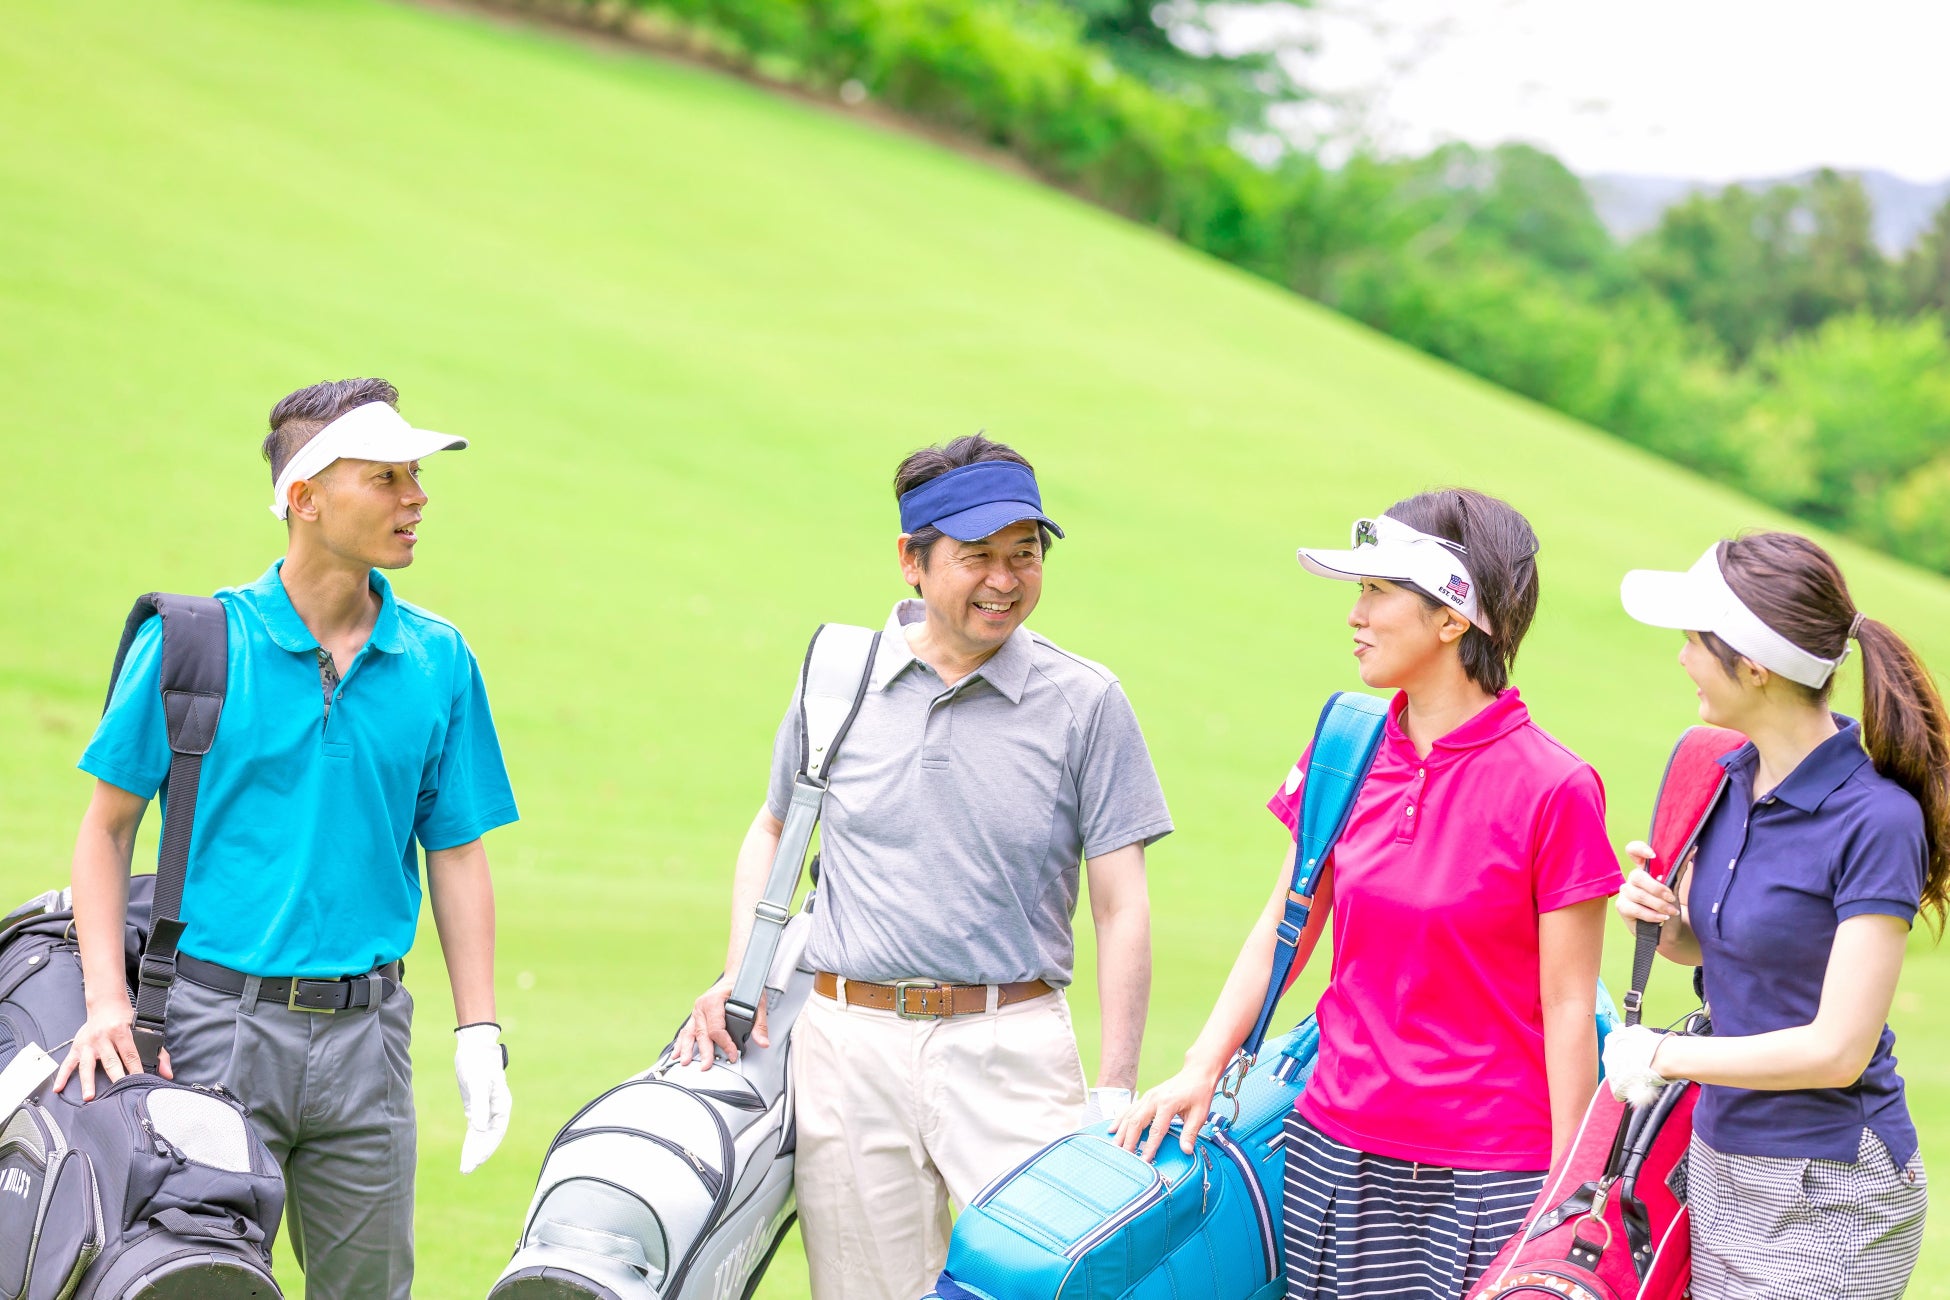 会社員がゴルフを始めて良かったと思うのは、スポーツの楽しさを得られることと、健康的になったこと！スポーツ用品のガラスコーティングを手掛けるアドウェルが「会社員ゴルファーの実態」に関する調査を実施！